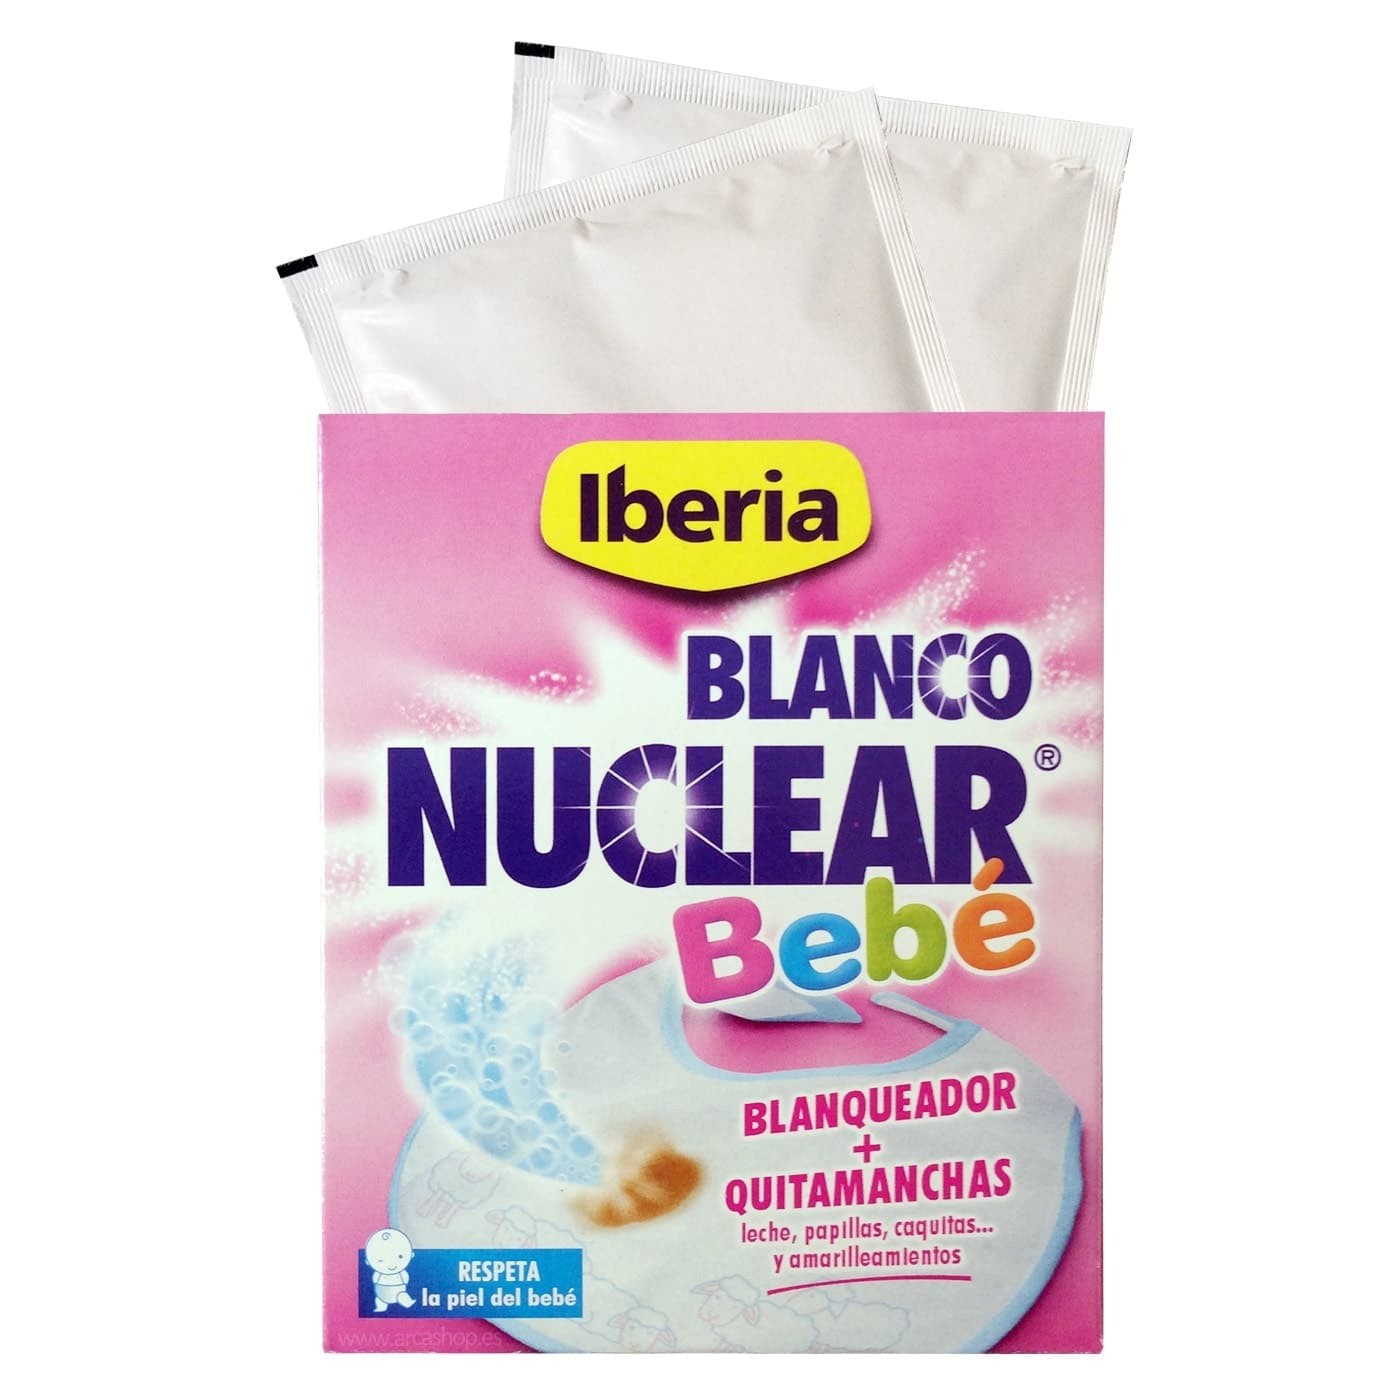 Comprar Blanco Nuclear Especial BEBÉ de Iberia blanqueador y quitamanchas para la ropa blanca de bebé